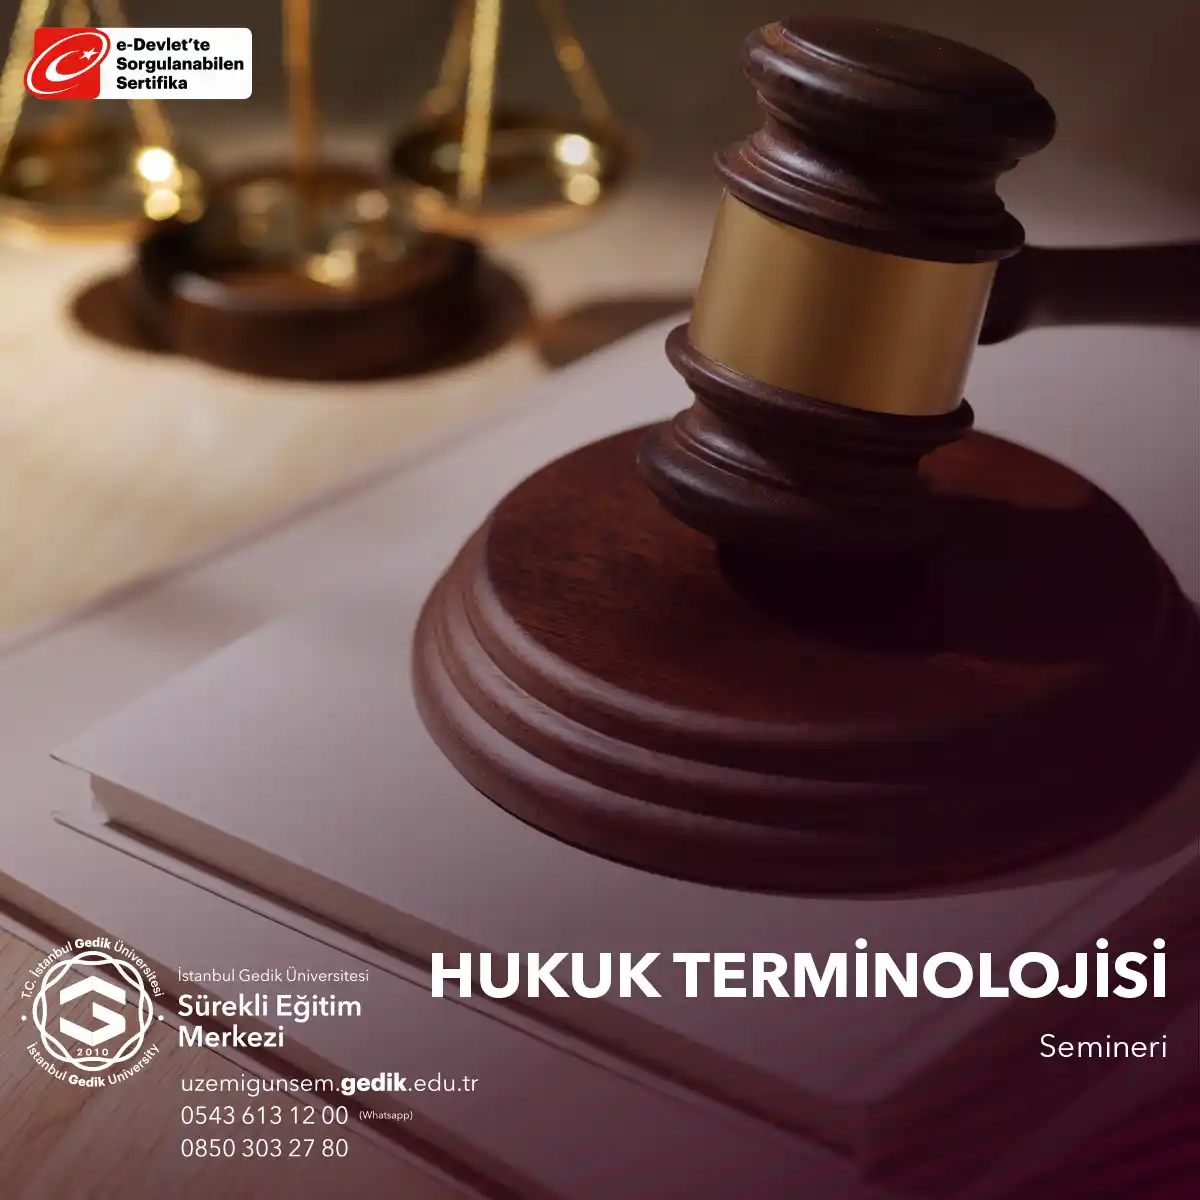 Hukuk Terminolojisi Semineri, hukuk alanında çalışanlar, hukuk öğrencileri ve hukukla ilgili profesyoneller için tasarlanmış bir eğitim programıdır.